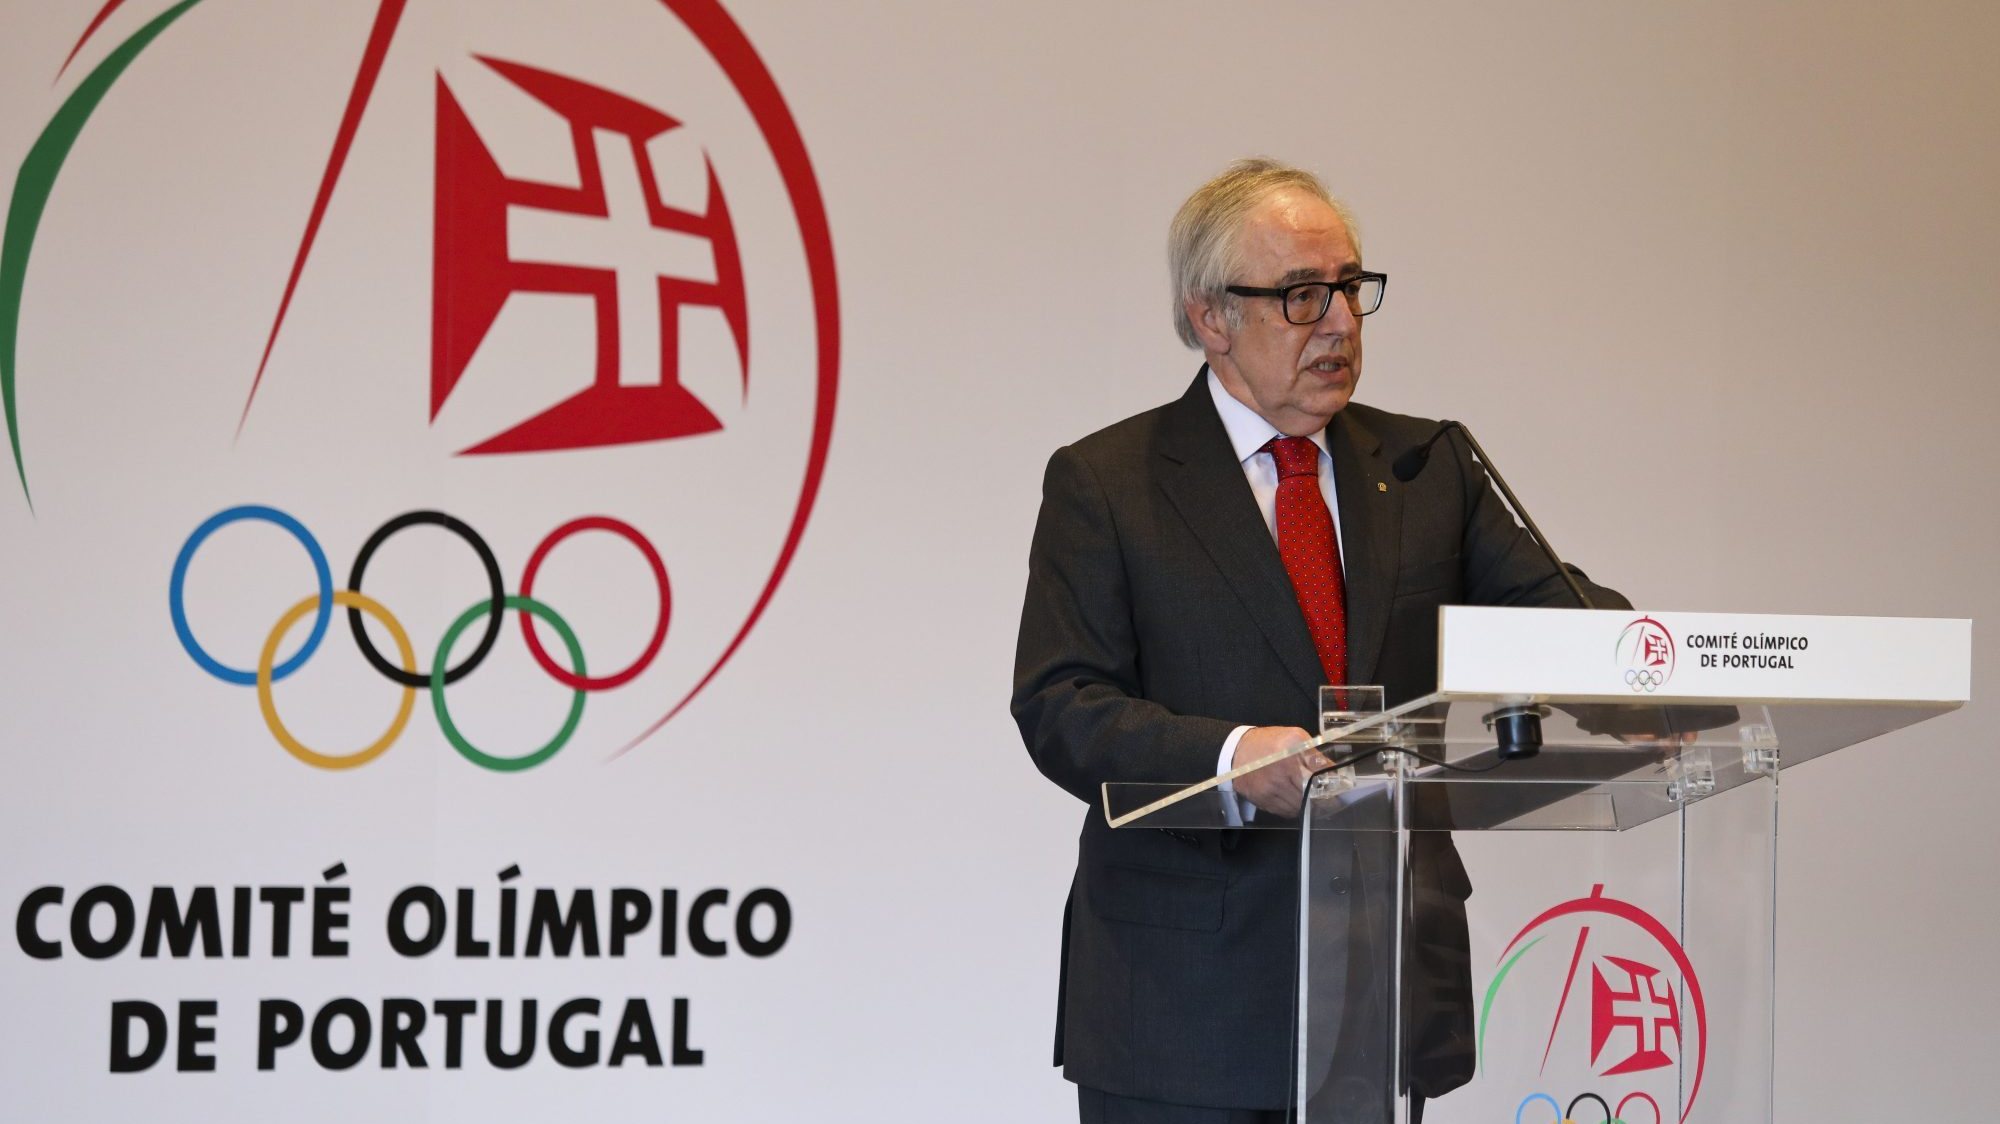 &quot;Não sou capaz de antecipar as medidas que o desporto poderá eventualmente vir a adotar&quot;, afirmou José Manuel Constantino, presidente do Comité Olímpico de Portugal